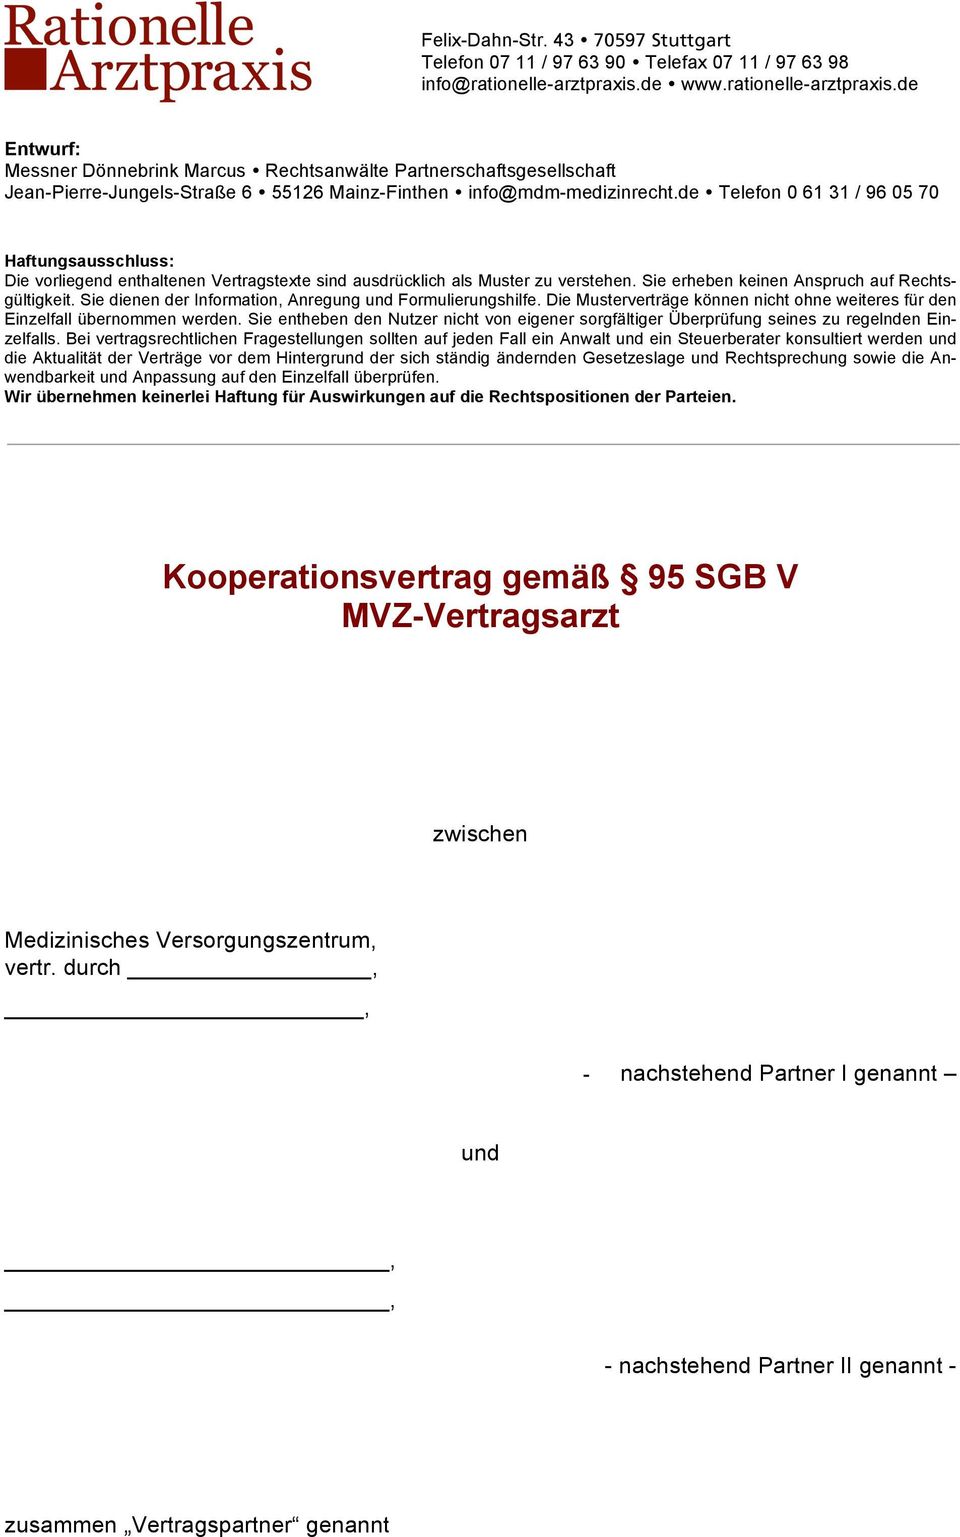 Kooperationsvertrag Gemäß 95 Sgb V Mvz Vertragsarzt Pdf